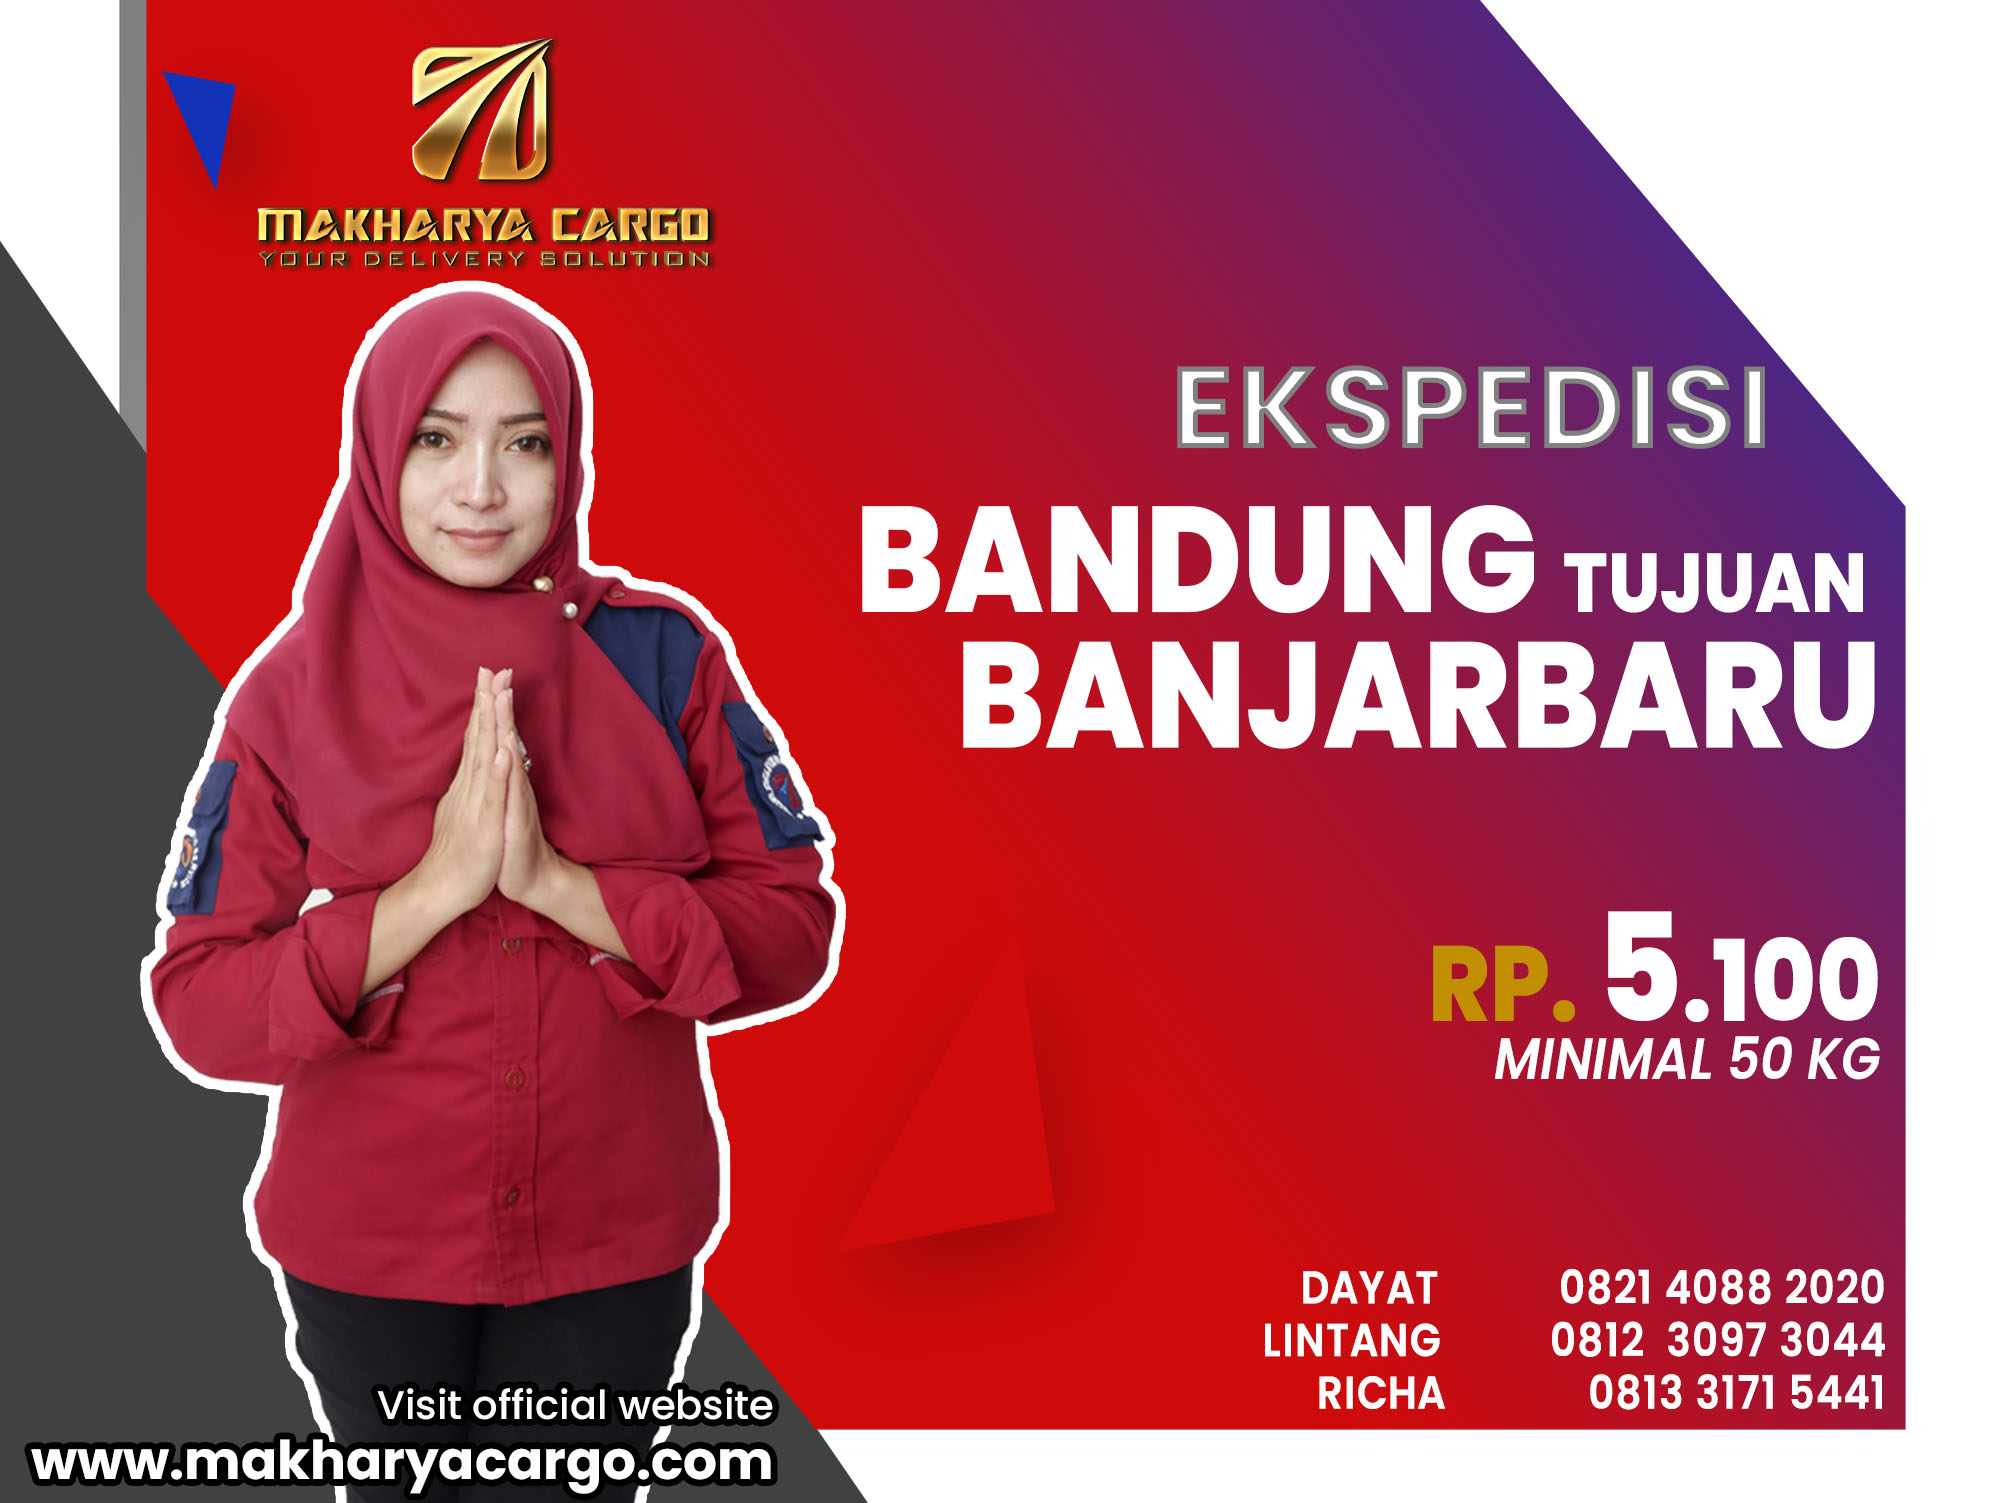 Ekspedisi Bandung Banjarbaru